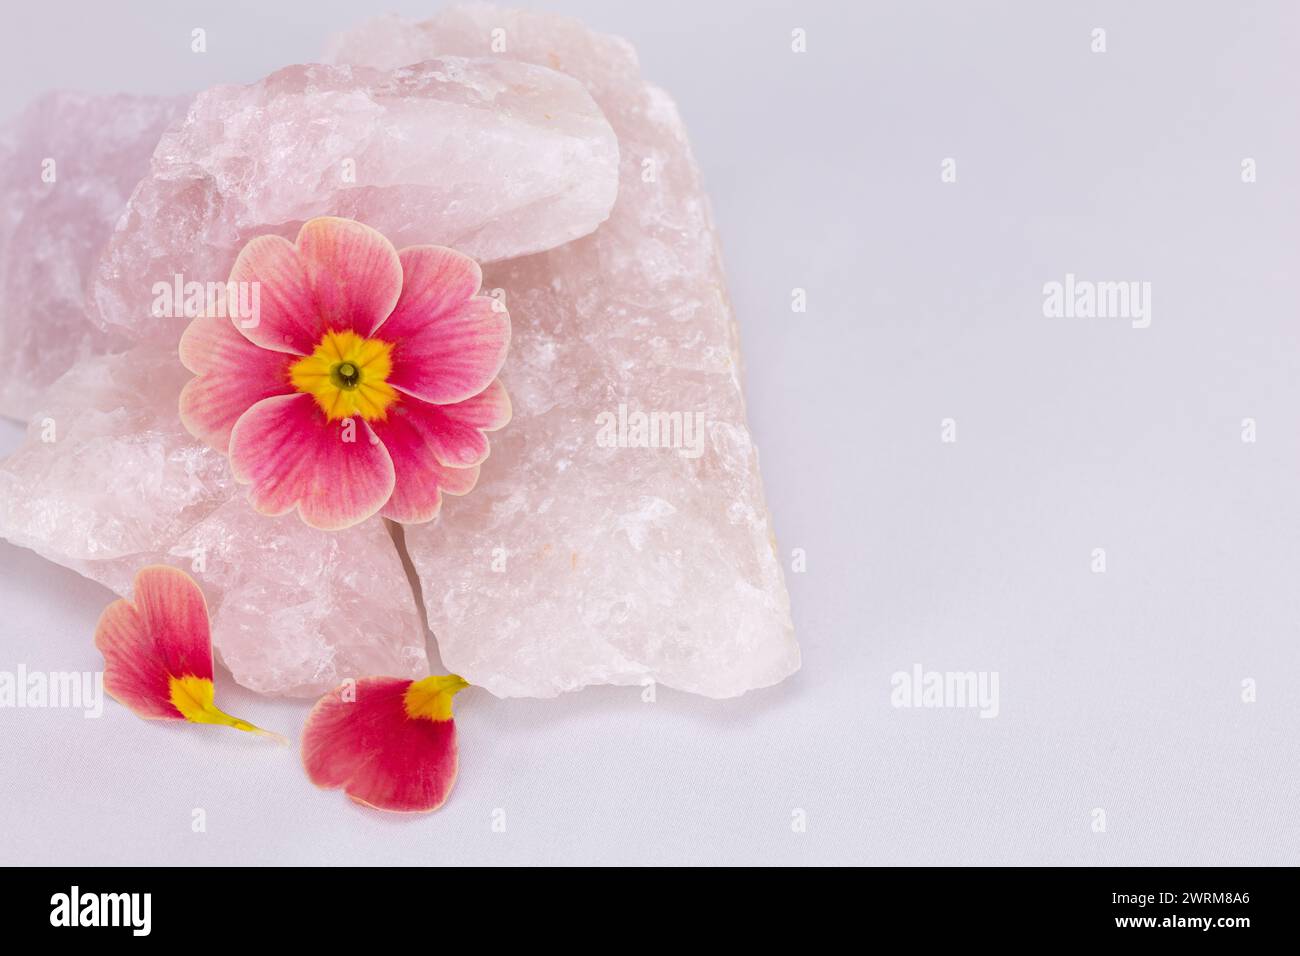 Rose Morn Petunie Blume mit gefallenen Blüten, die Rosenquarzgestein vor einem hellen Hintergrund auflösendes Studio-Bild mit Kopierraum spalten Stockfoto